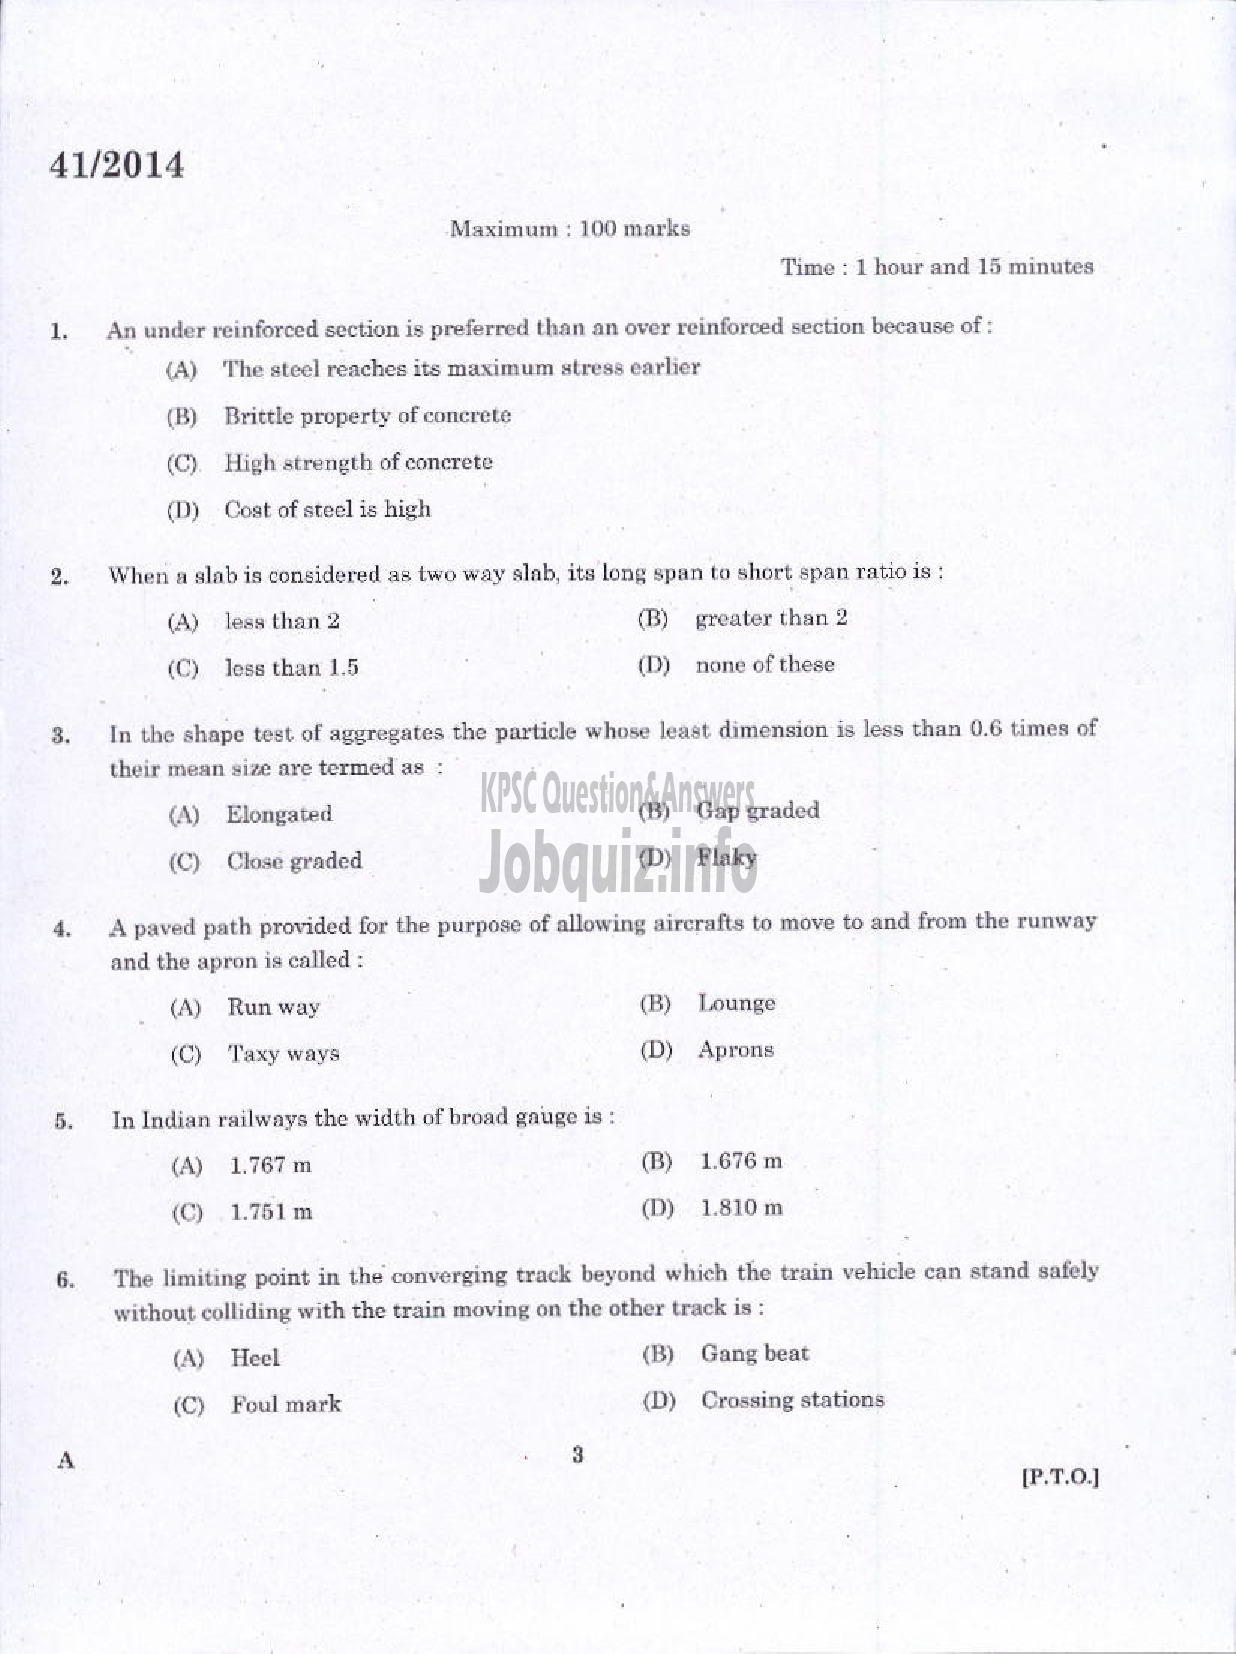 Kerala PSC Question Paper - WORK SUPERVISOR OVERSEER GRADE II DRAUGHTSMAN GRADE II-1